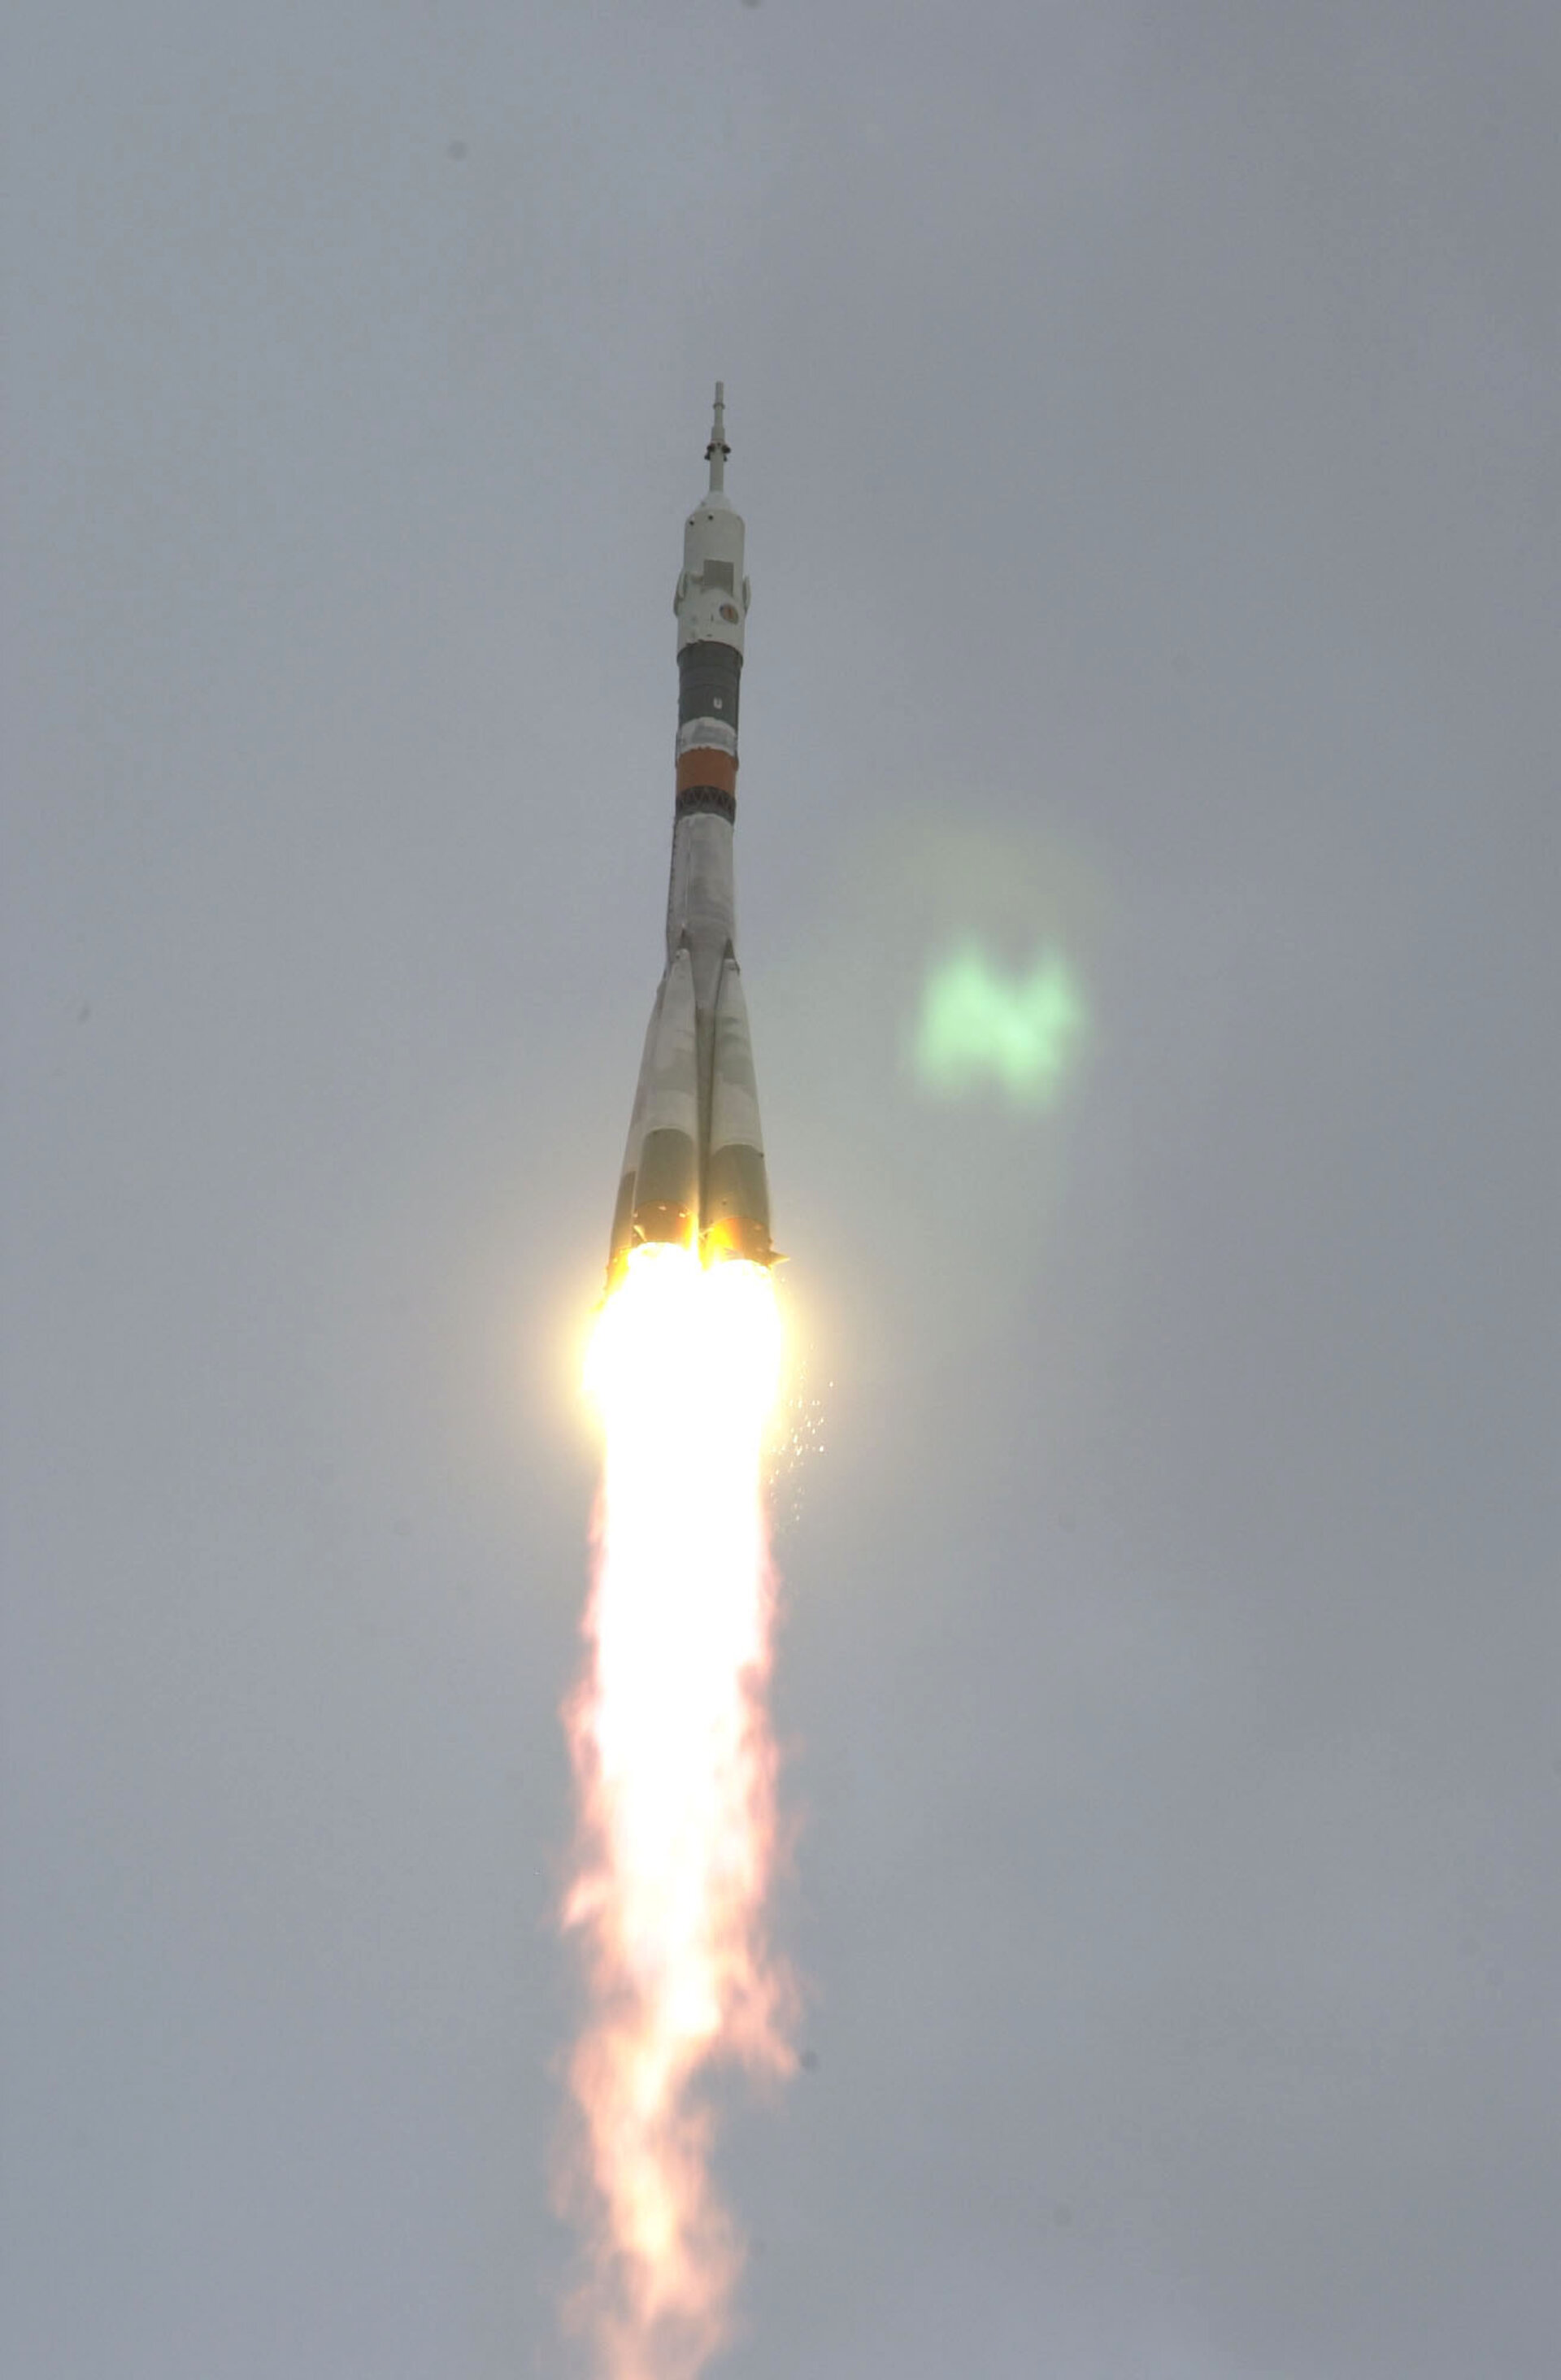 A Soyuz launch